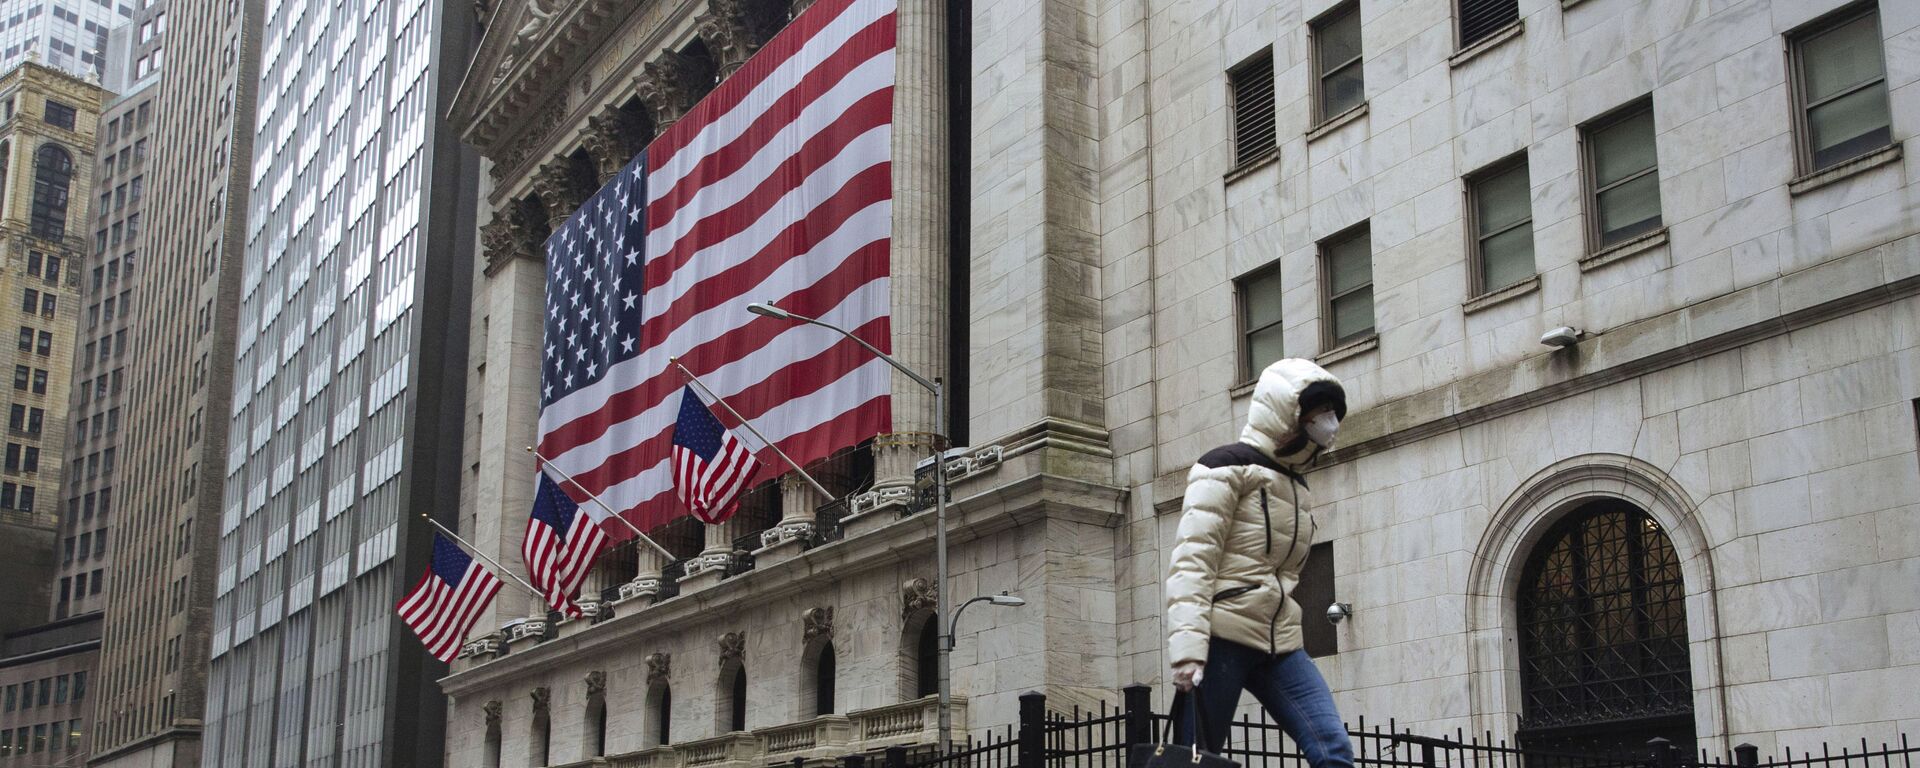 Пешеход в маске проходит мимо Нью-Йоркской фондовой биржи в Нью-Йорке - Sputnik Таджикистан, 1920, 08.11.2020